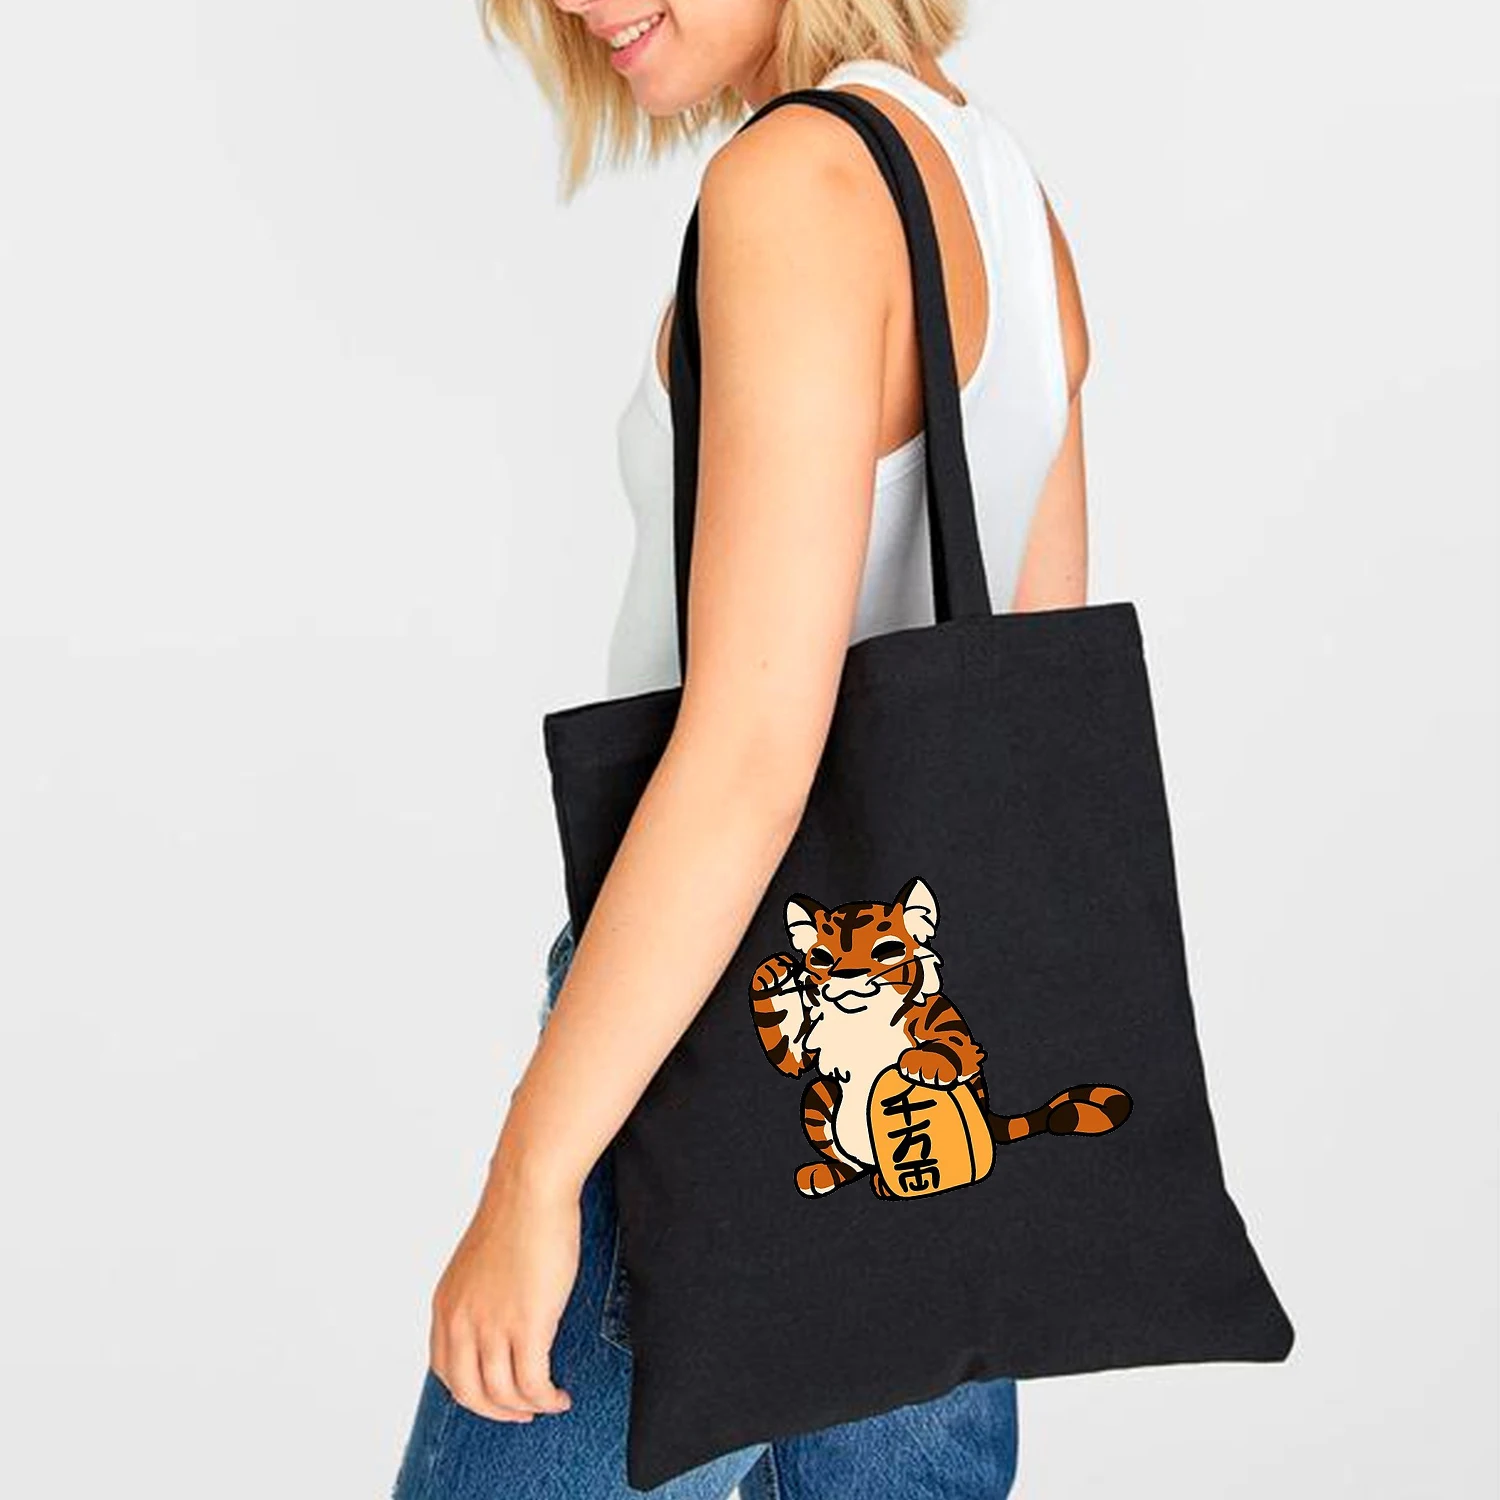 

Холщовая женская сумка для покупок с принтом тигра, милая эко-сумка на плечо из мультяшной ткани, модный многоразовый шоппер